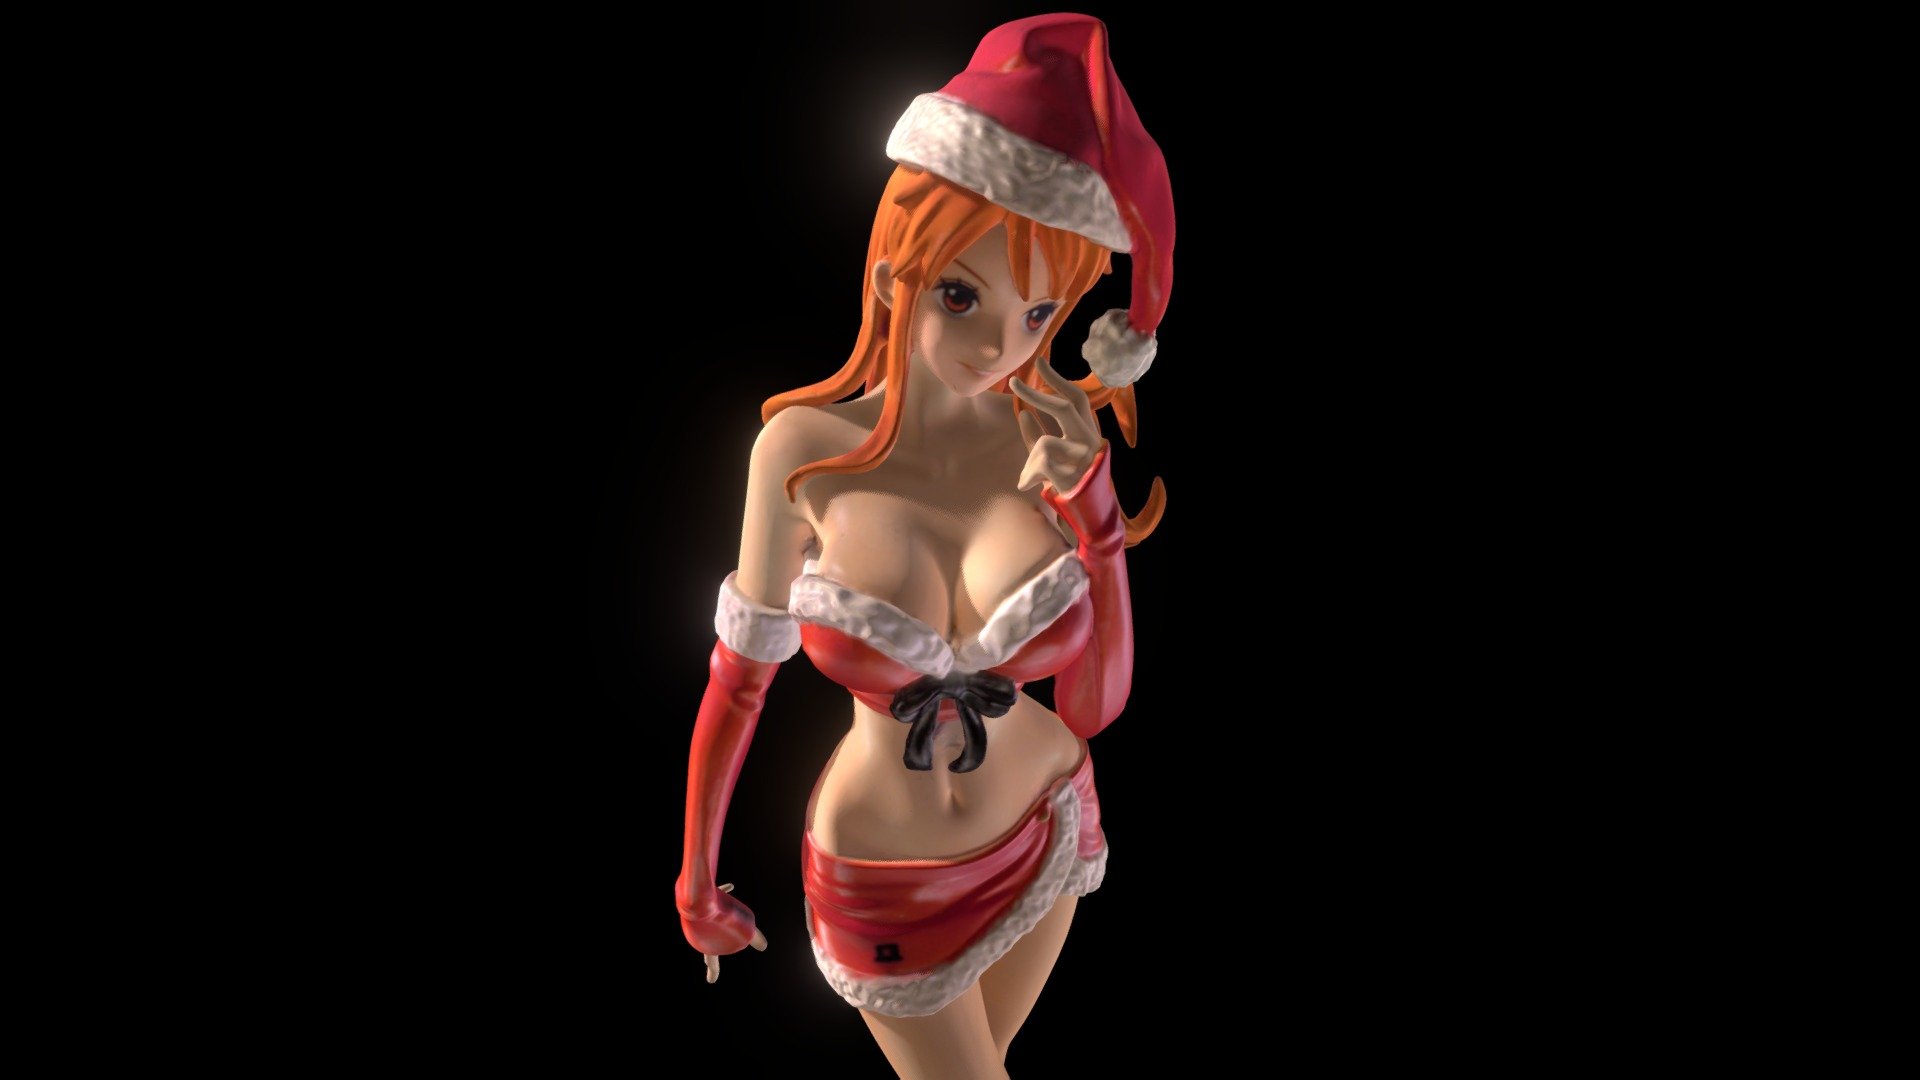 Nami Christmas 3D model by AKIN (artaru0660) [a05c4b8] Sketchfab